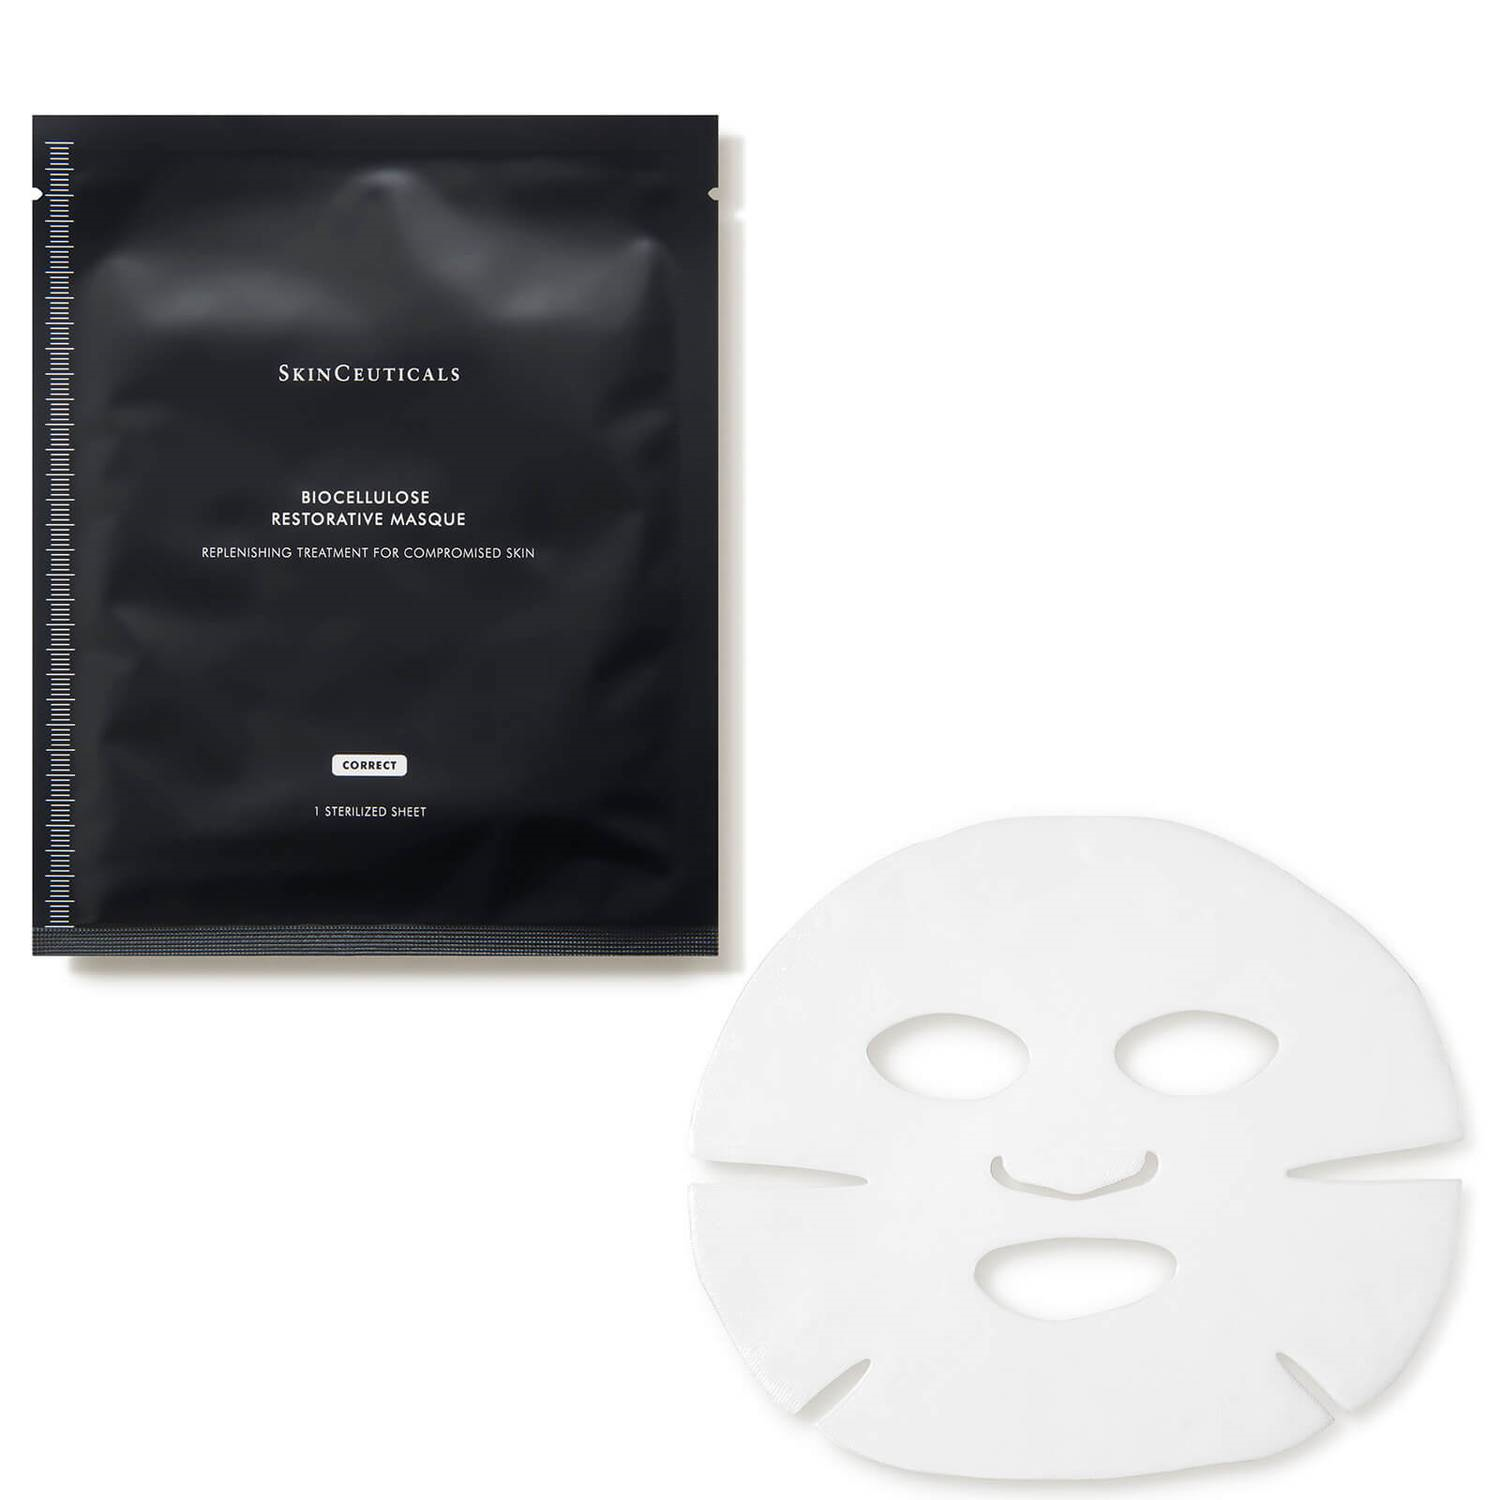 SkinCeuticals Biocellulose Restorative Masque